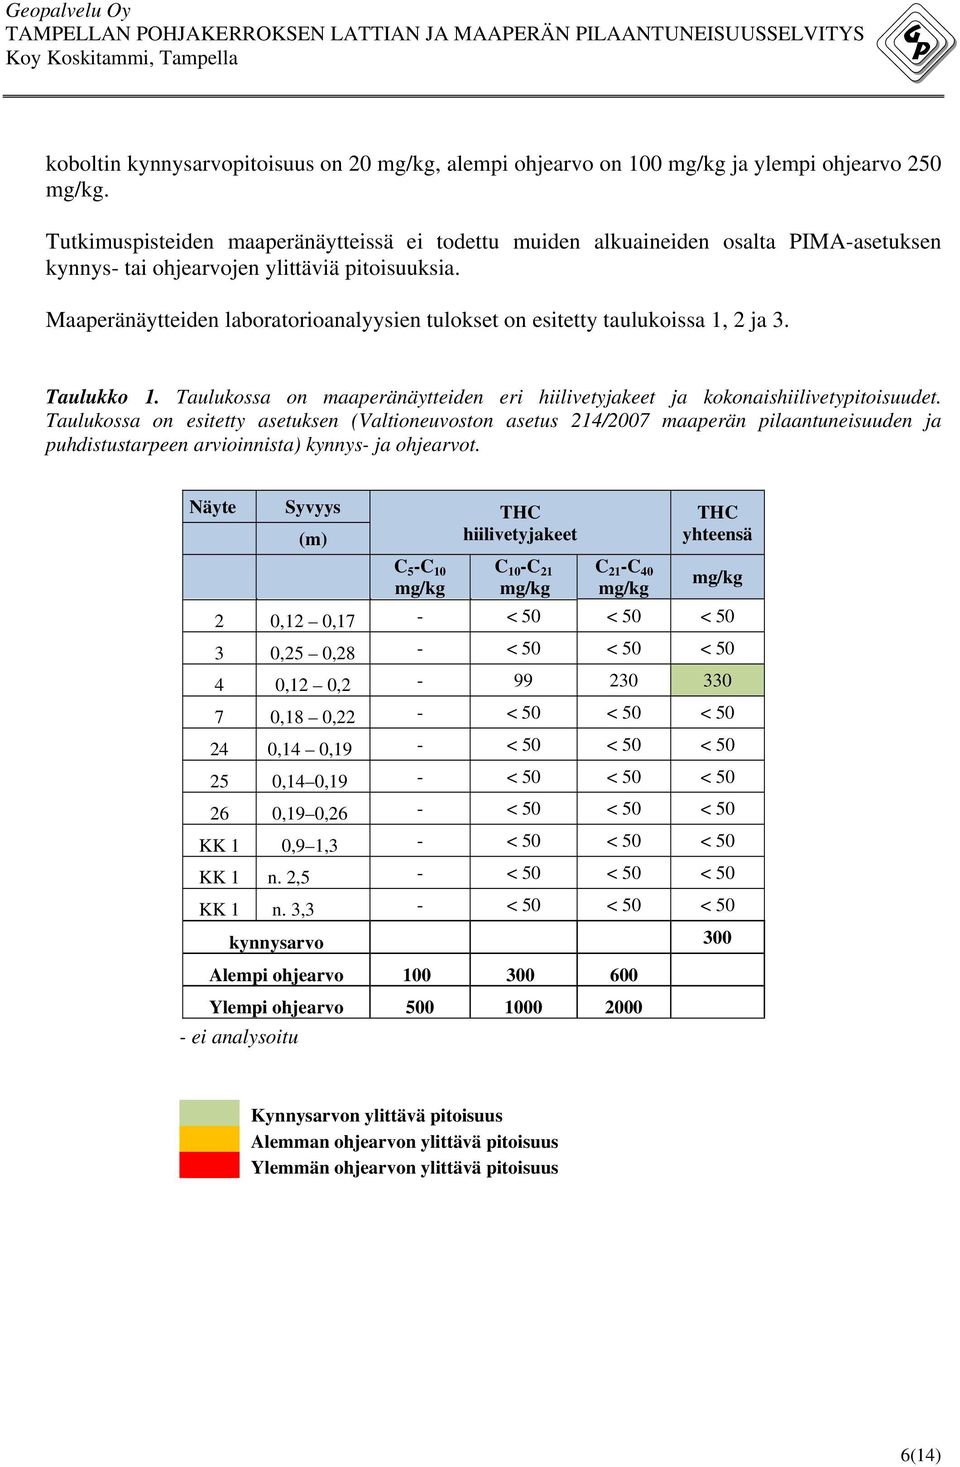 Maaperänäytteiden laboratorioanalyysien tulokset on esitetty taulukoissa 1, 2 ja 3. Taulukko 1. Taulukossa on maaperänäytteiden eri hiilivetyjakeet ja kokonaishiilivetypitoisuudet.